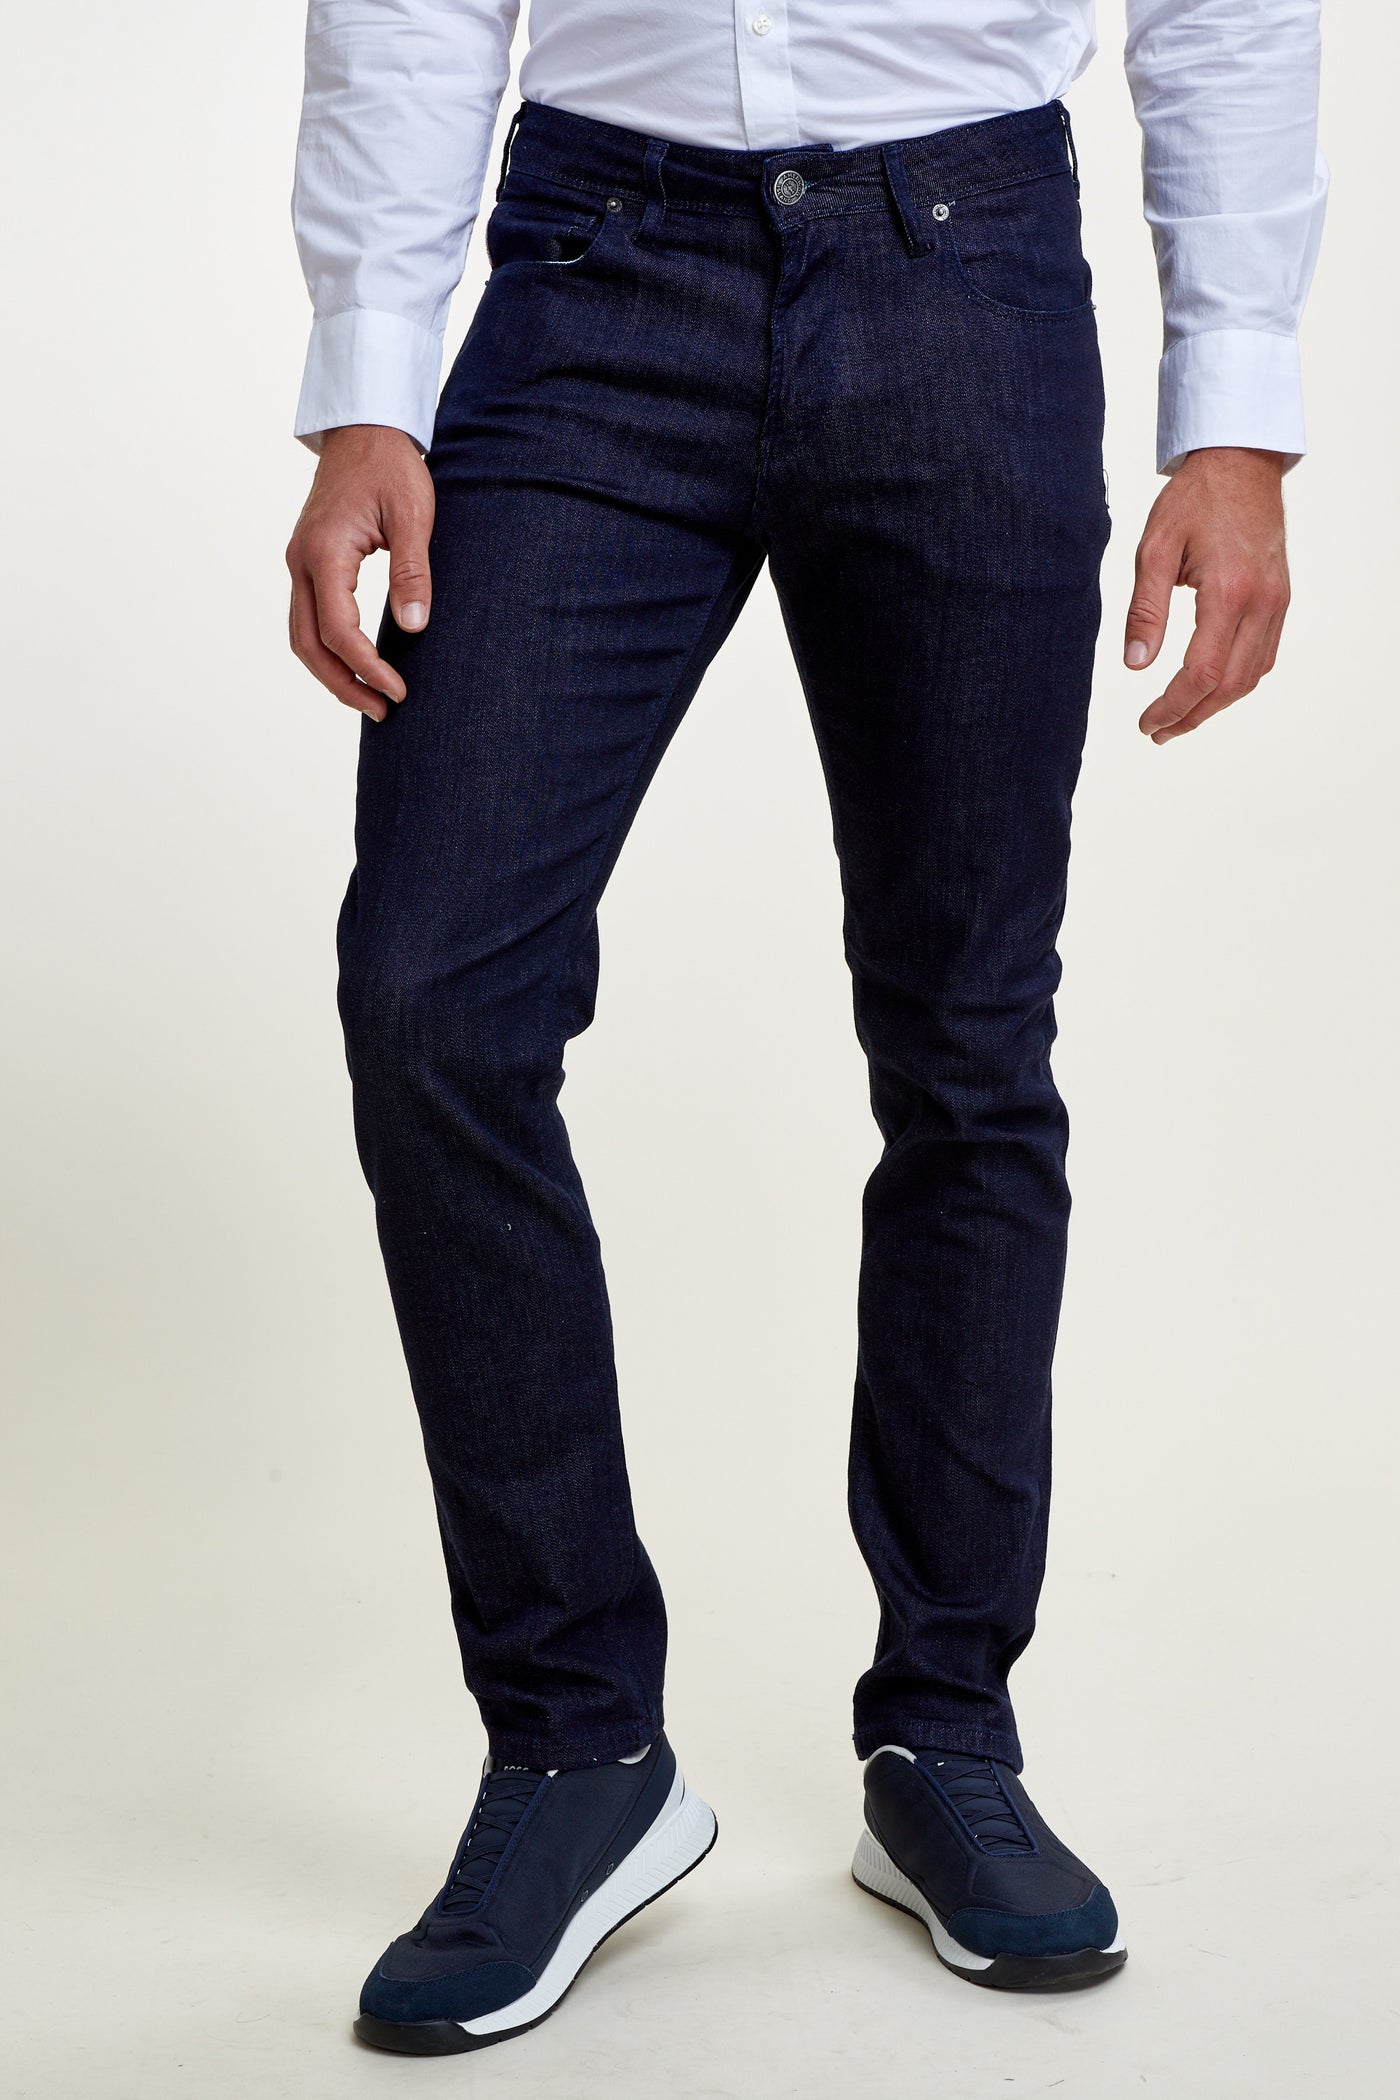 מכנס ג'ינס ריגולר בצבע כהה